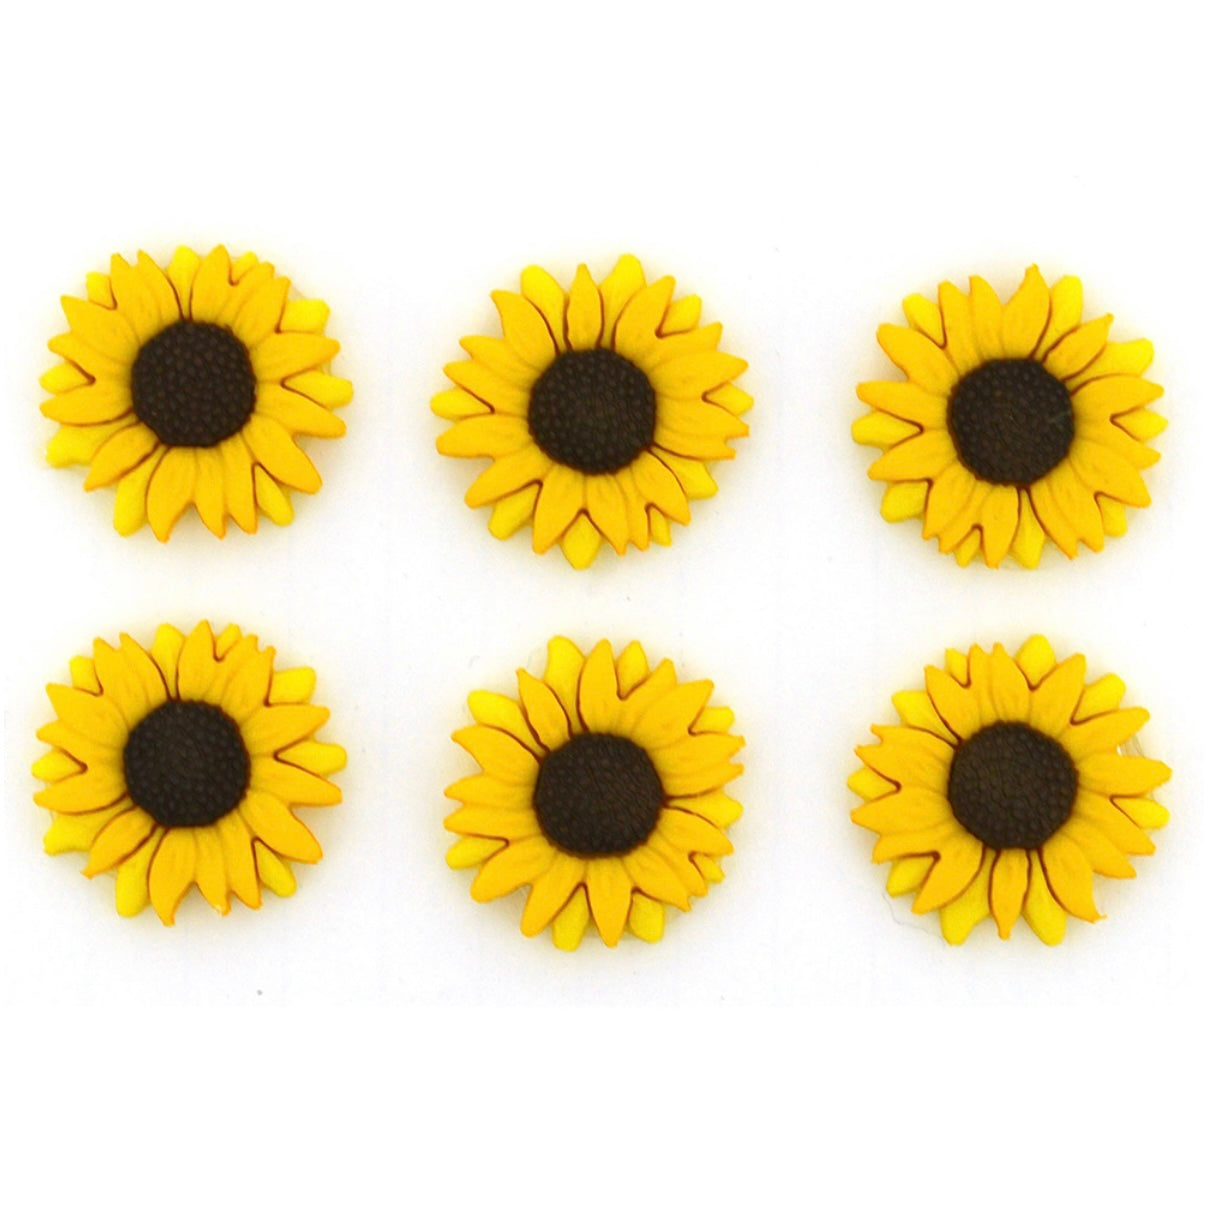 Novelty Buttons - Sunflowers - 6pcs